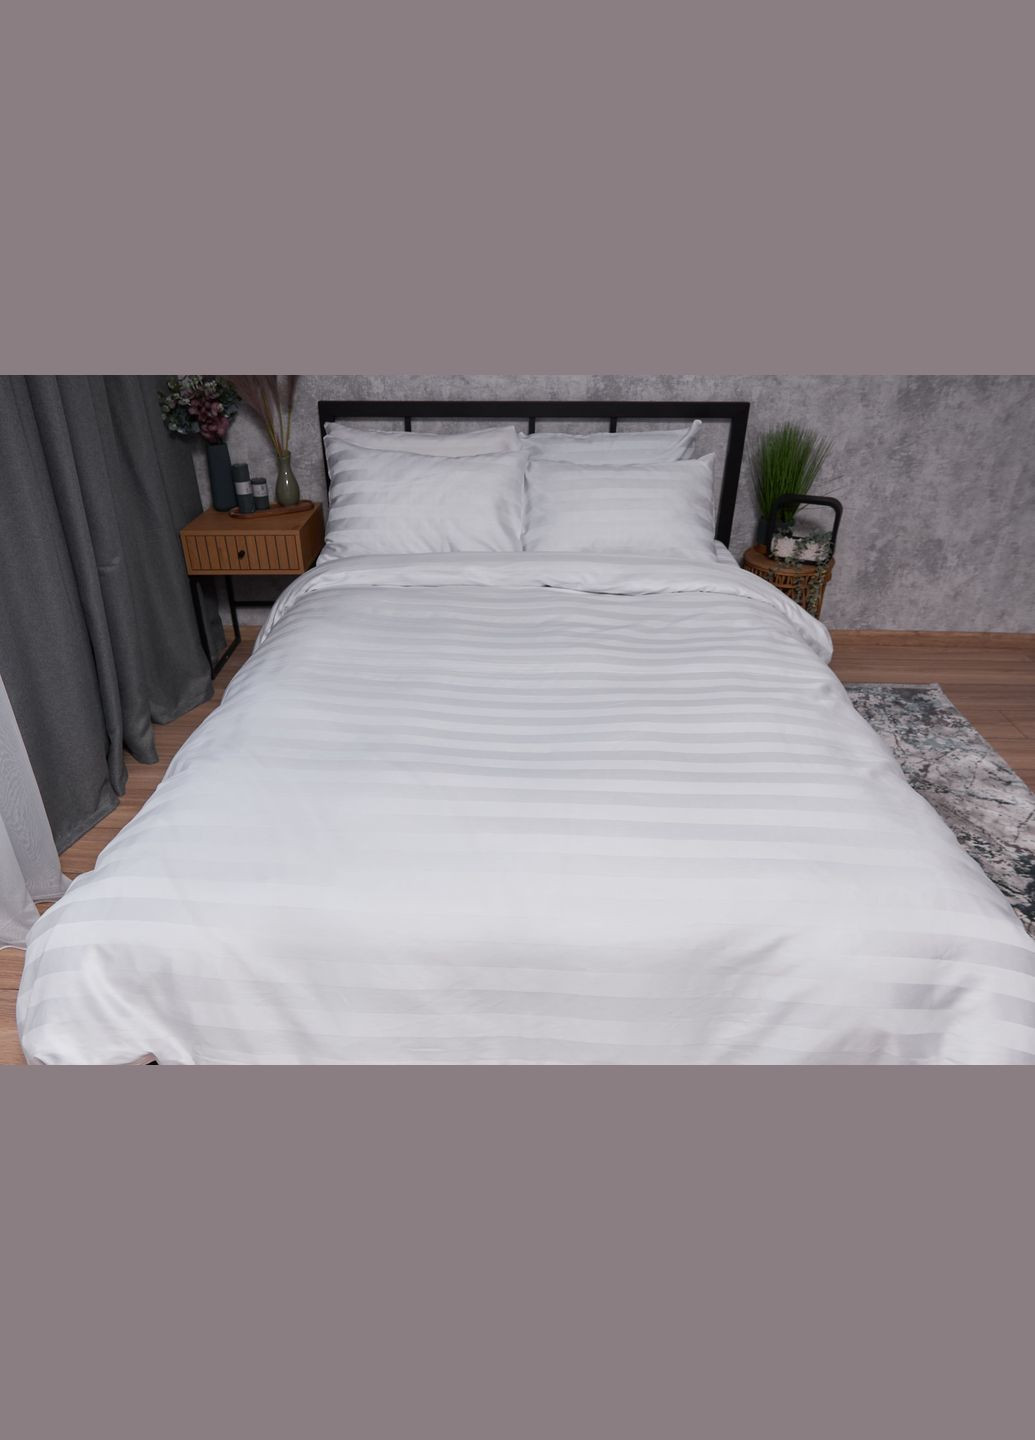 Комплект постельного белья Satin Premium евро 200х220 наволочки 2х40х60 (MS-820002938) Moon&Star royal white (288043824)